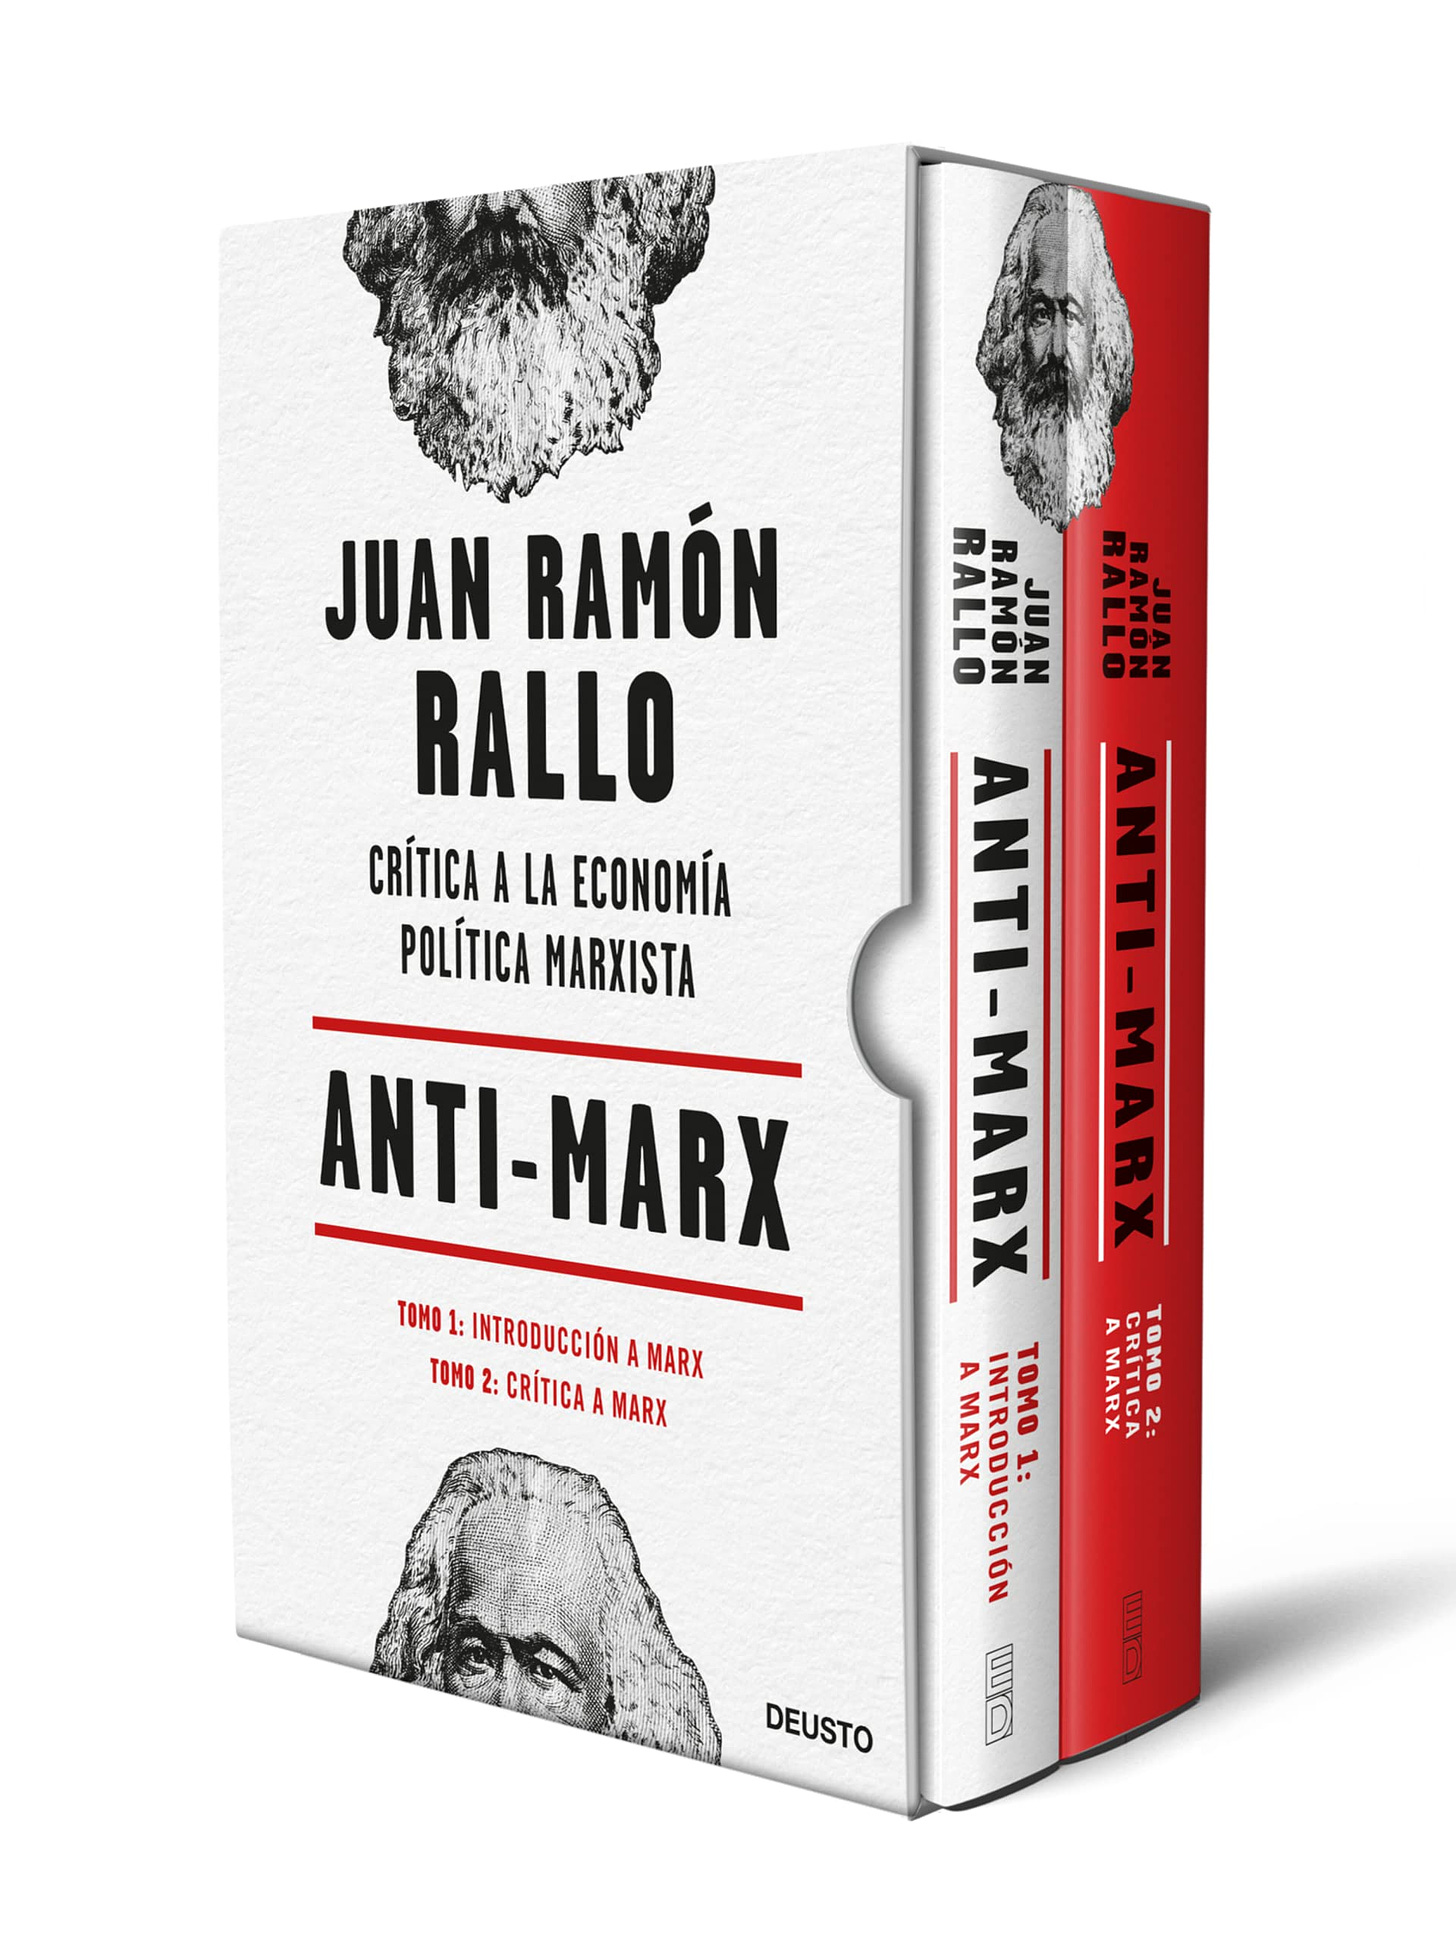 Anti-Marx: Crítica a la economía política marxista (Deusto) : Rallo, Juan  Ramón: Amazon.es: Libros